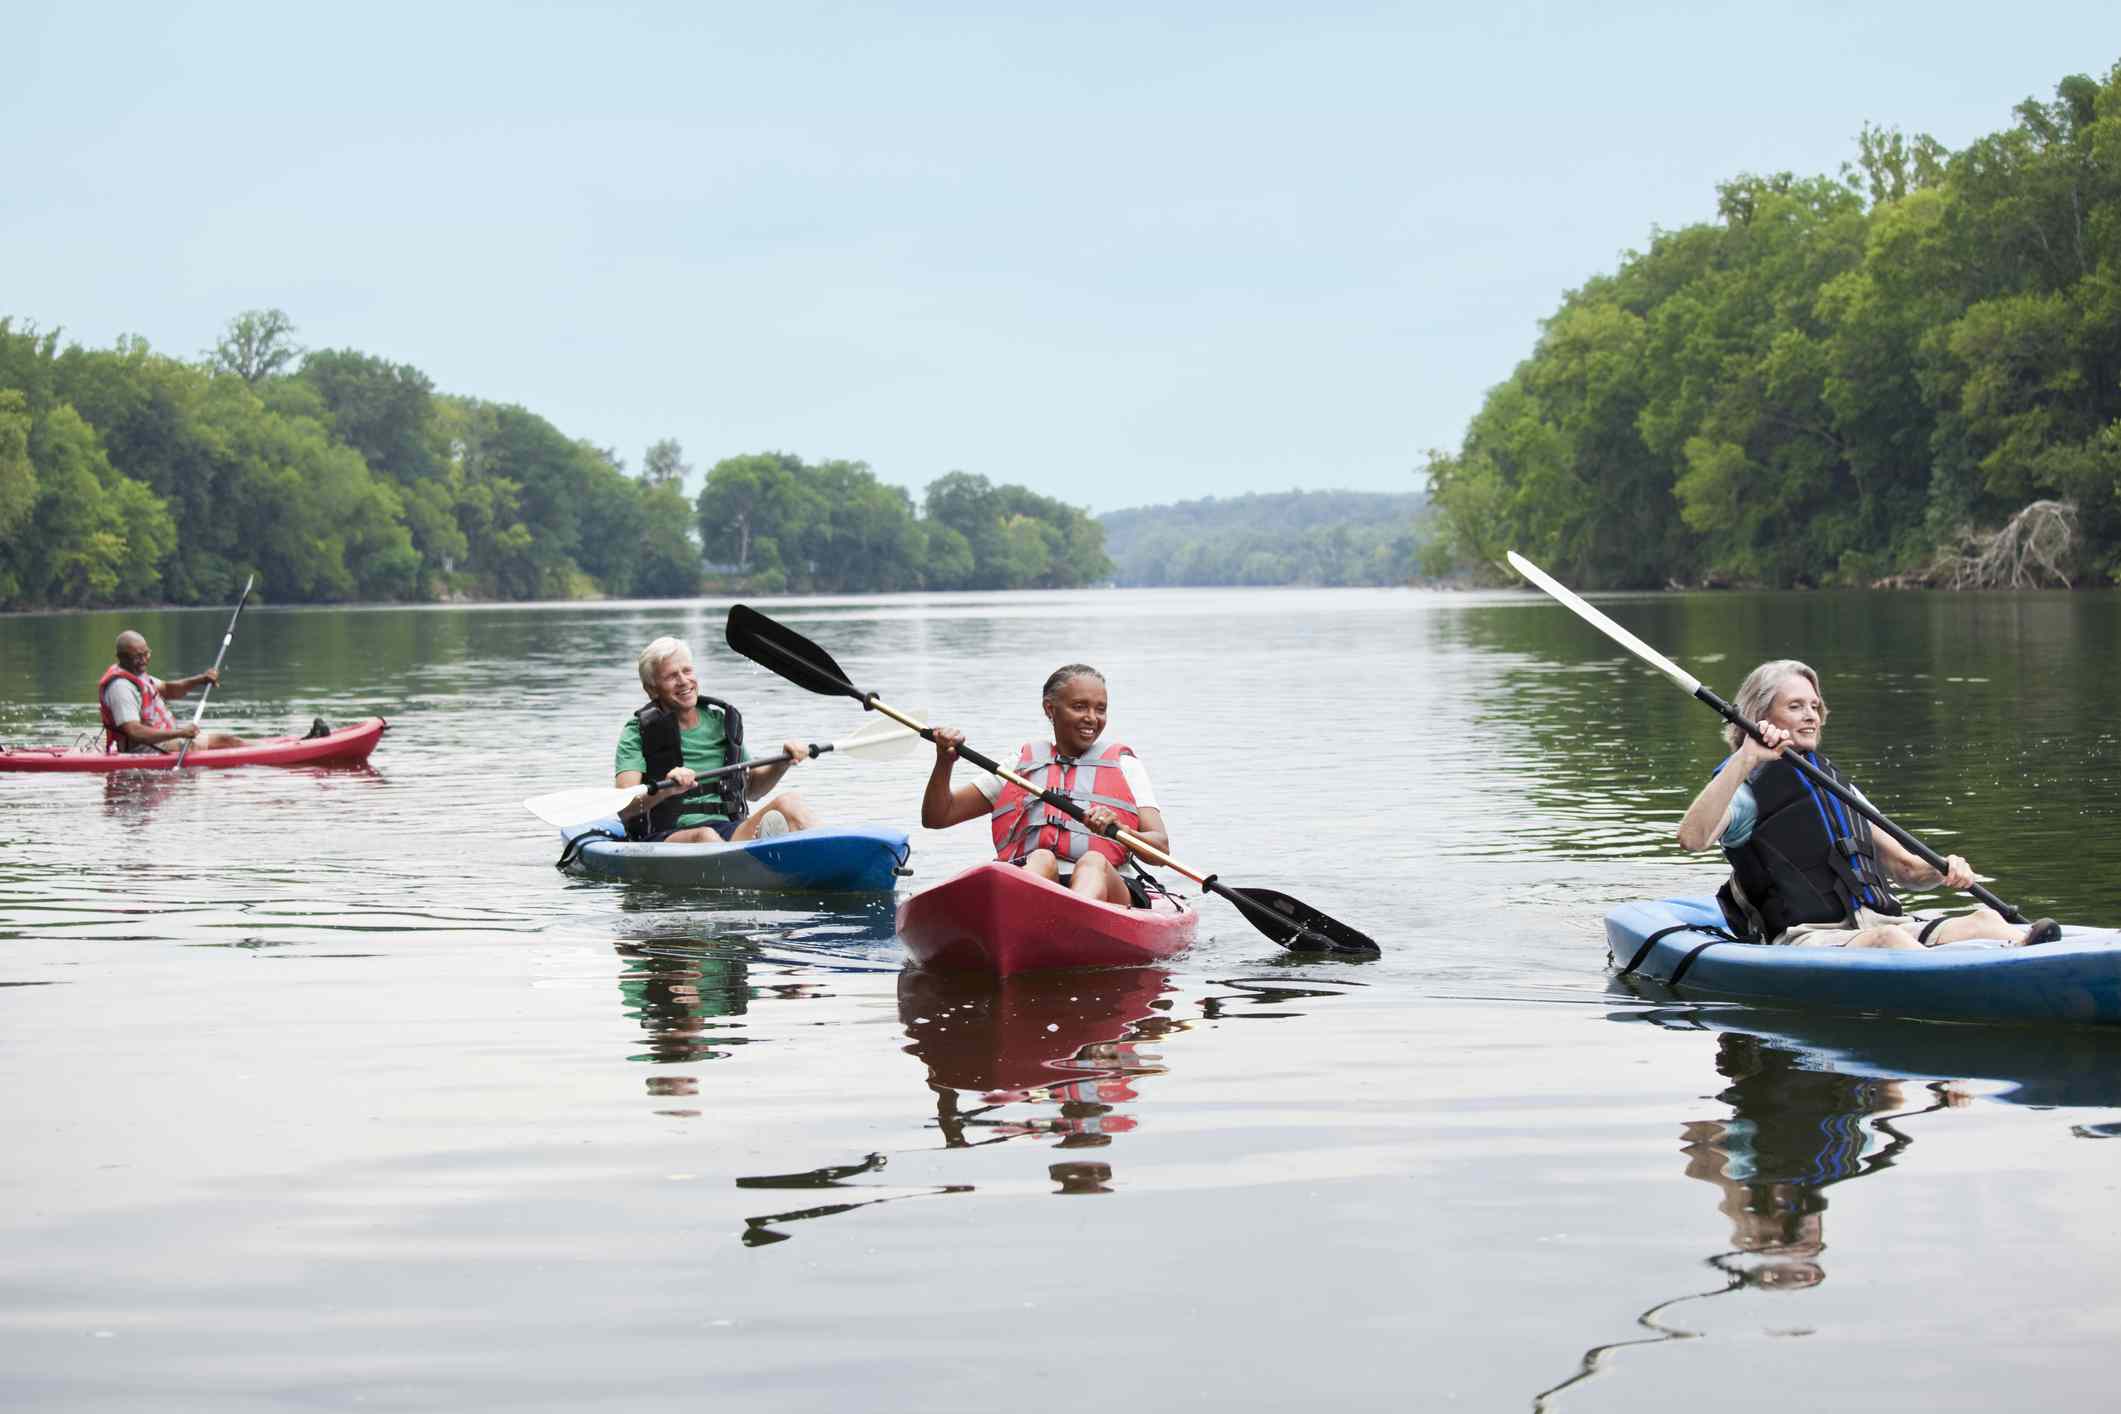 Personas maduras de edad avanzada haciendo kayak en un lago